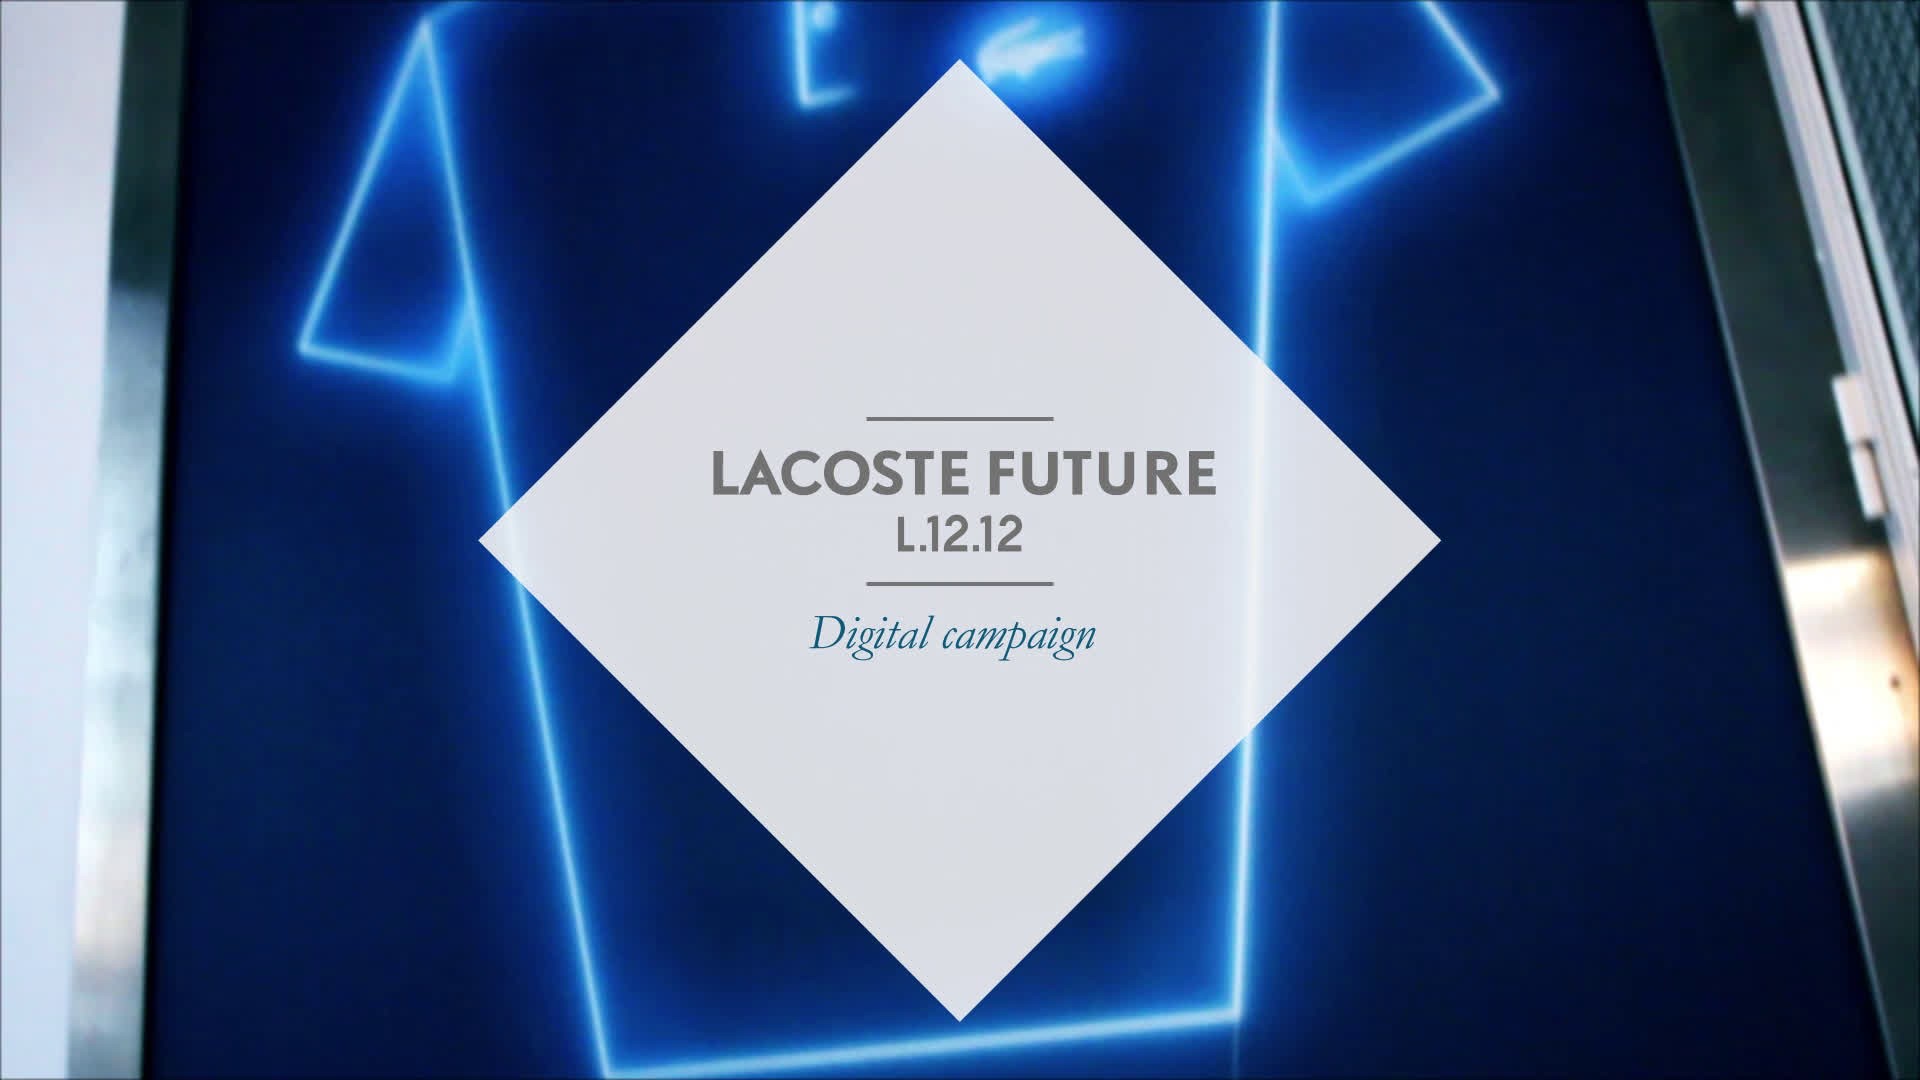 LACOSTE FUTURE L1212